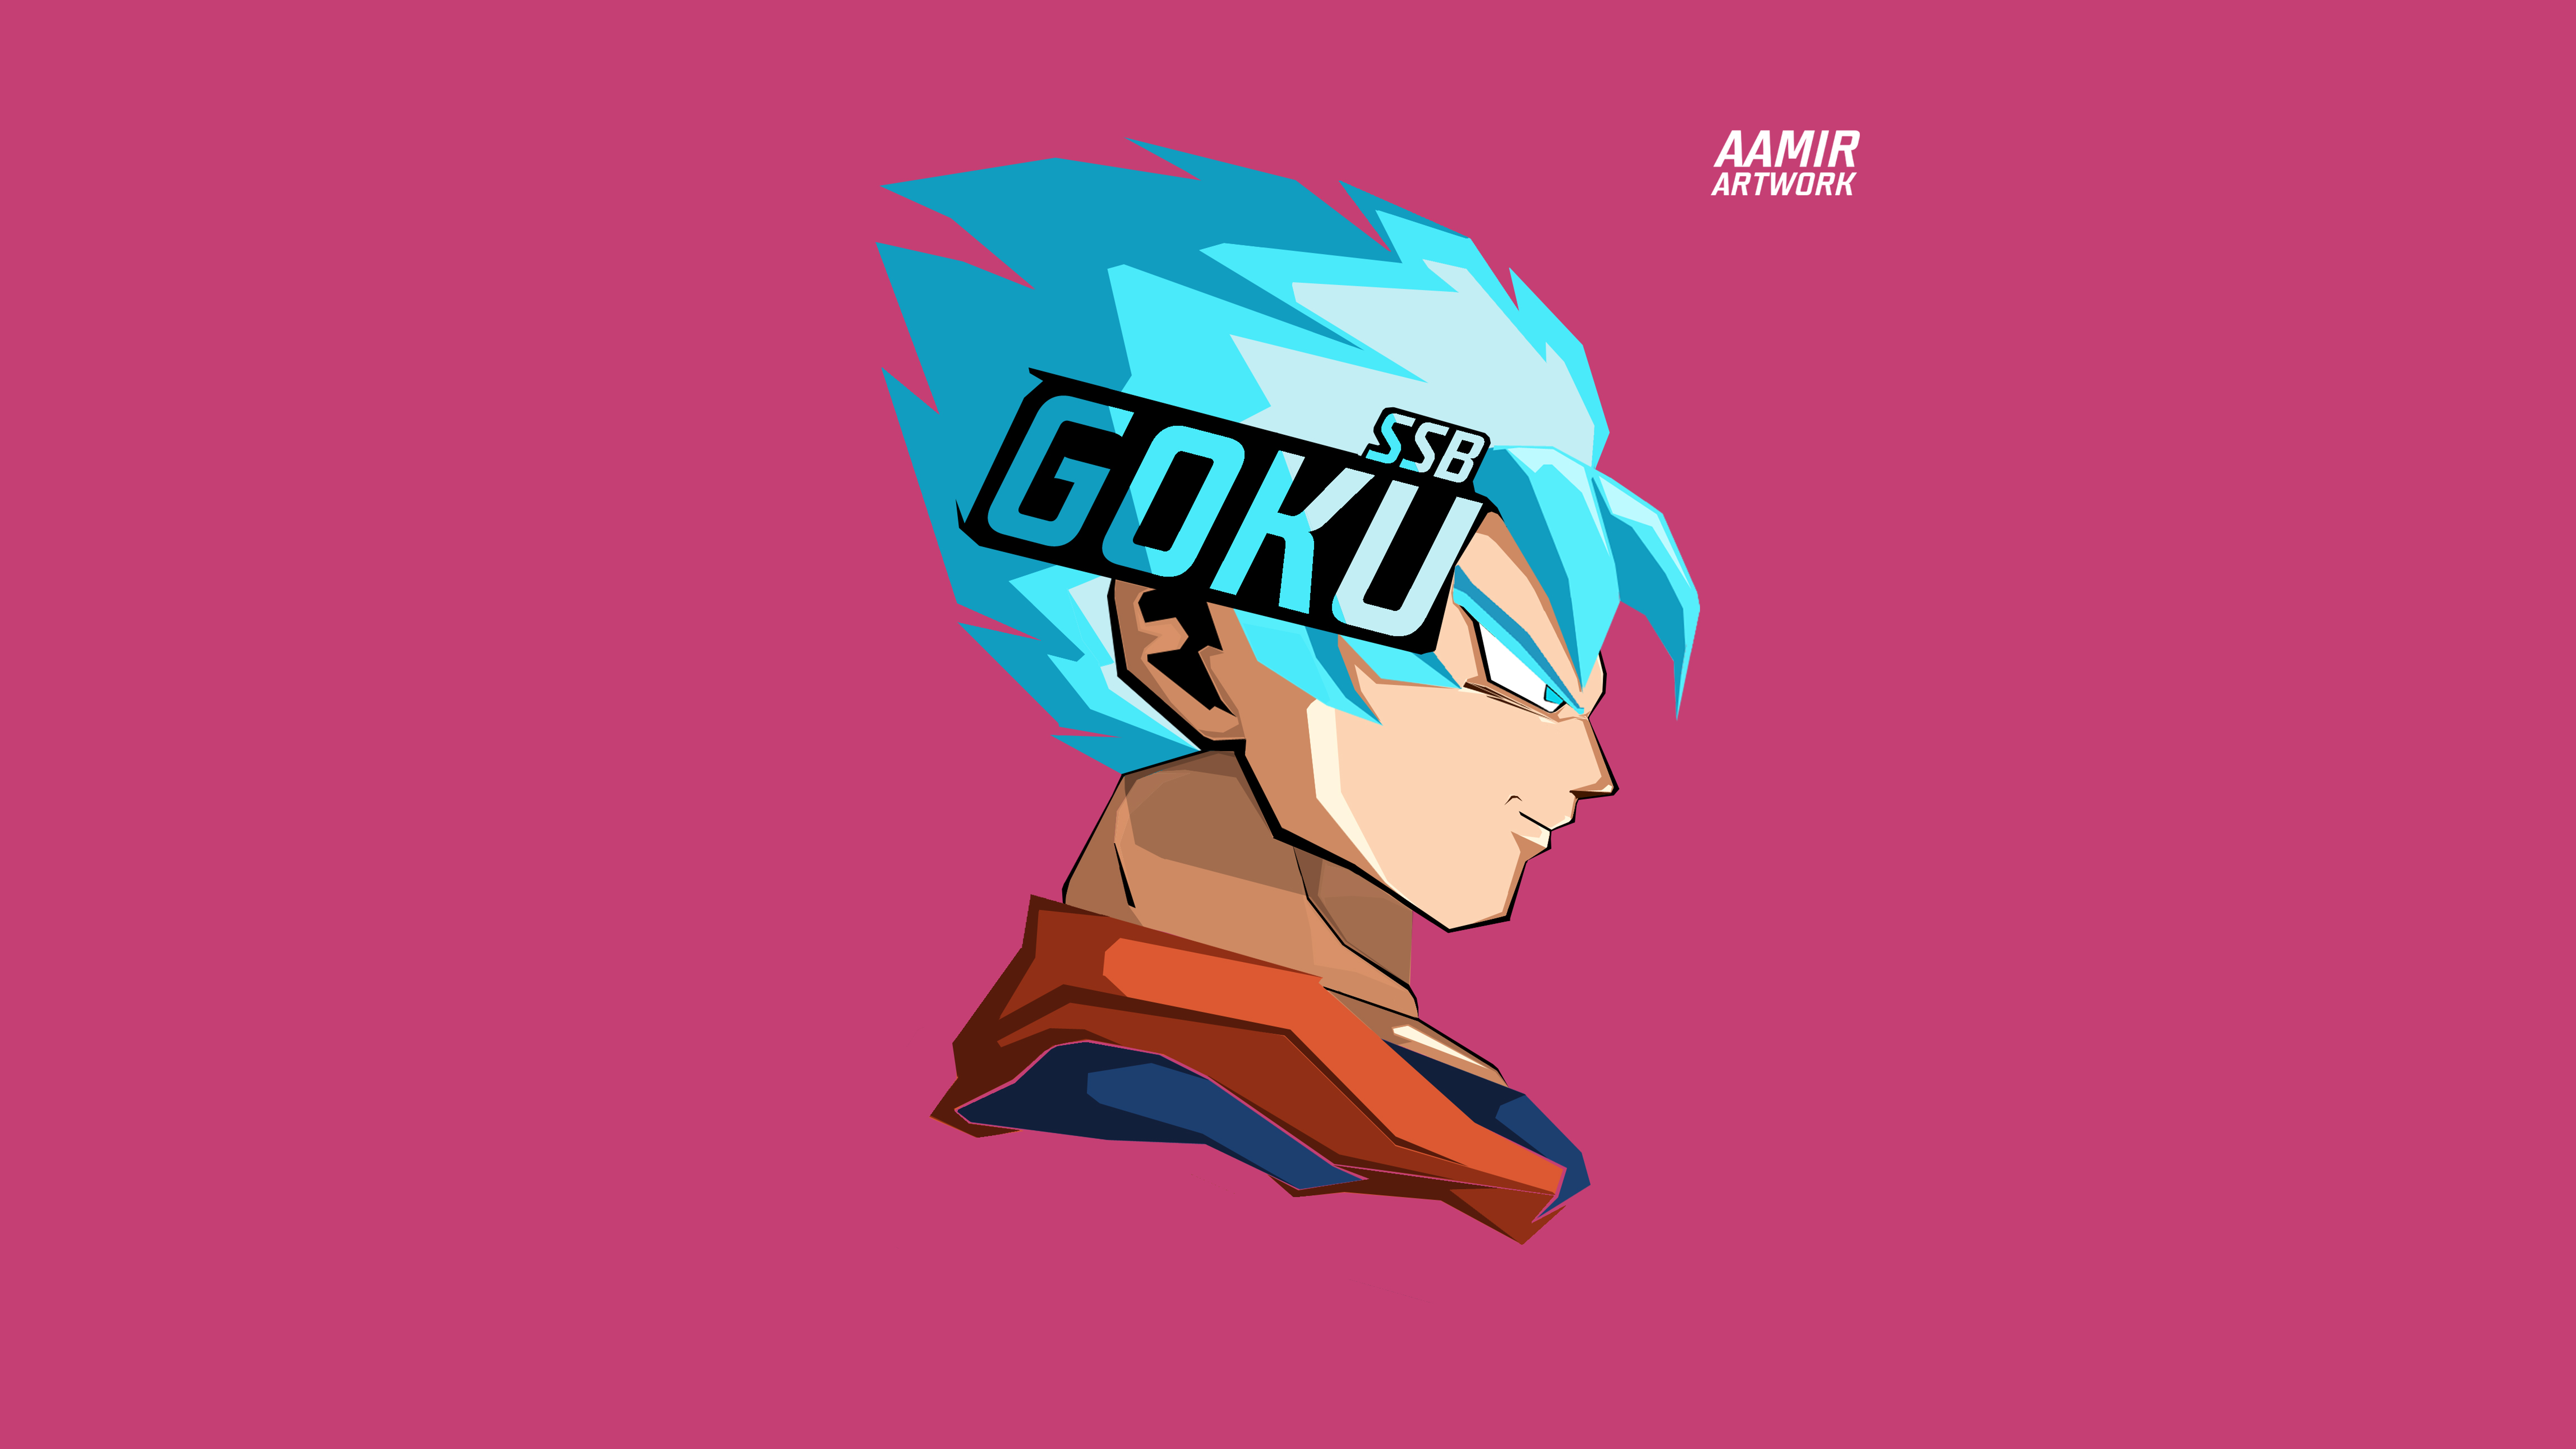 Goku,Super Saiyan Blue by Umair Aamir